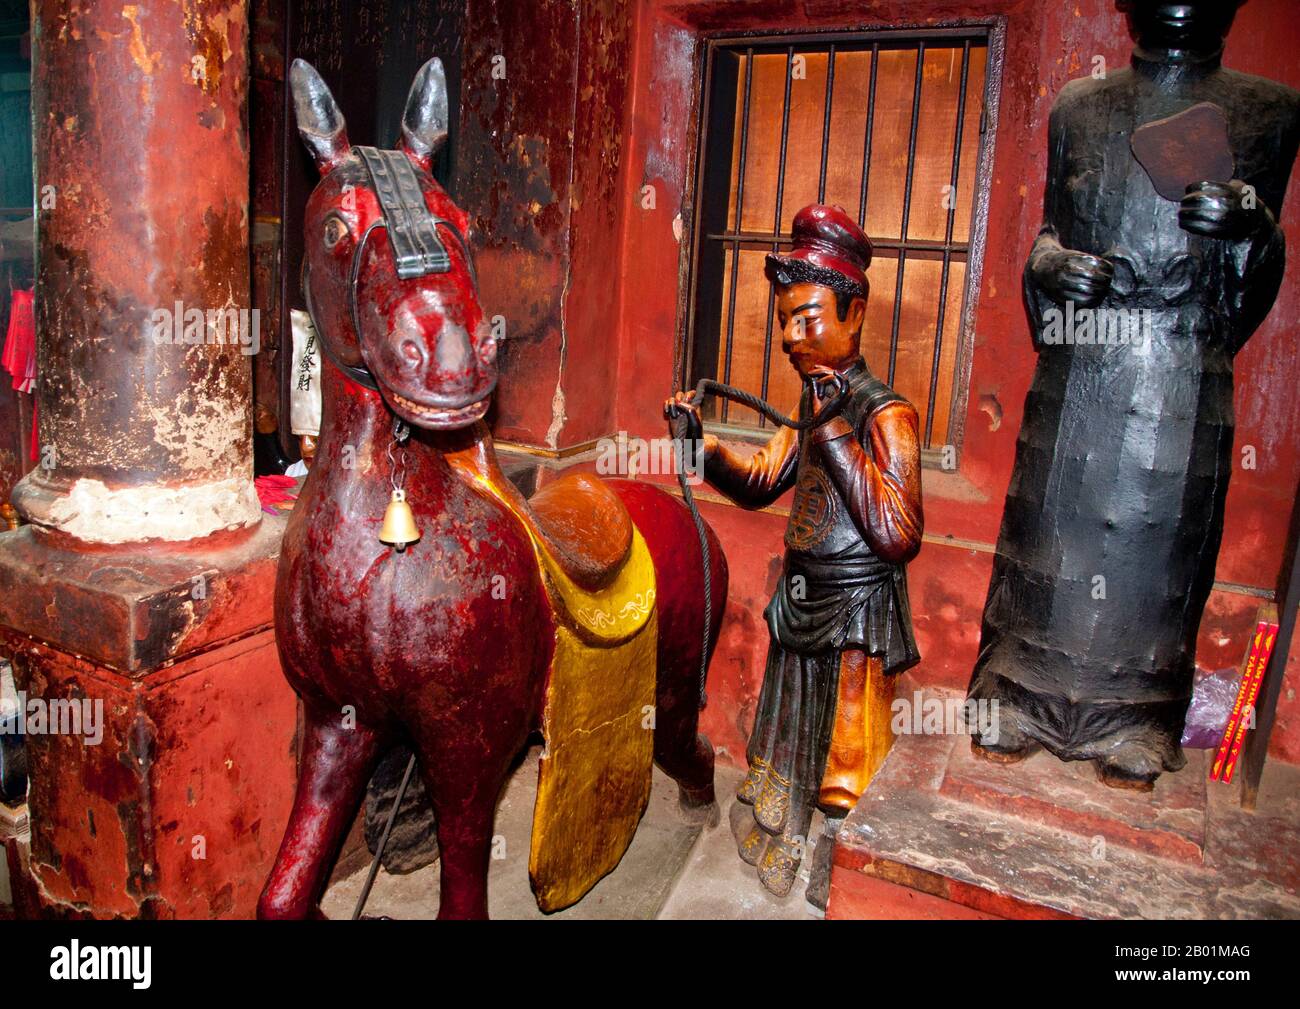 Vietnam : le cheval chanceux du roi de l'enfer avec accompagnateur, pagode de l'empereur de jade, Ho Chi Minh ville (Saigon). Chua Ngoc Hoang ou «Pagode de l'empereur de jade» a été construit en 1909, c'est un temple chinois spectaculairement coloré dédié à Ngoc Huang, empereur de jade du panthéon taoïste. L'Empereur de Jade est le souverain taoïste du ciel et de tous les royaumes d'existence ci-dessous, y compris celui de l'Homme et de l'Enfer, selon la mythologie taoïste. Il est l'un des dieux les plus importants du panthéon de la religion traditionnelle chinoise. Dans la croyance taoïste, l'Empereur de Jade gouverne tout le Royaume des mortels et en dessous. Banque D'Images